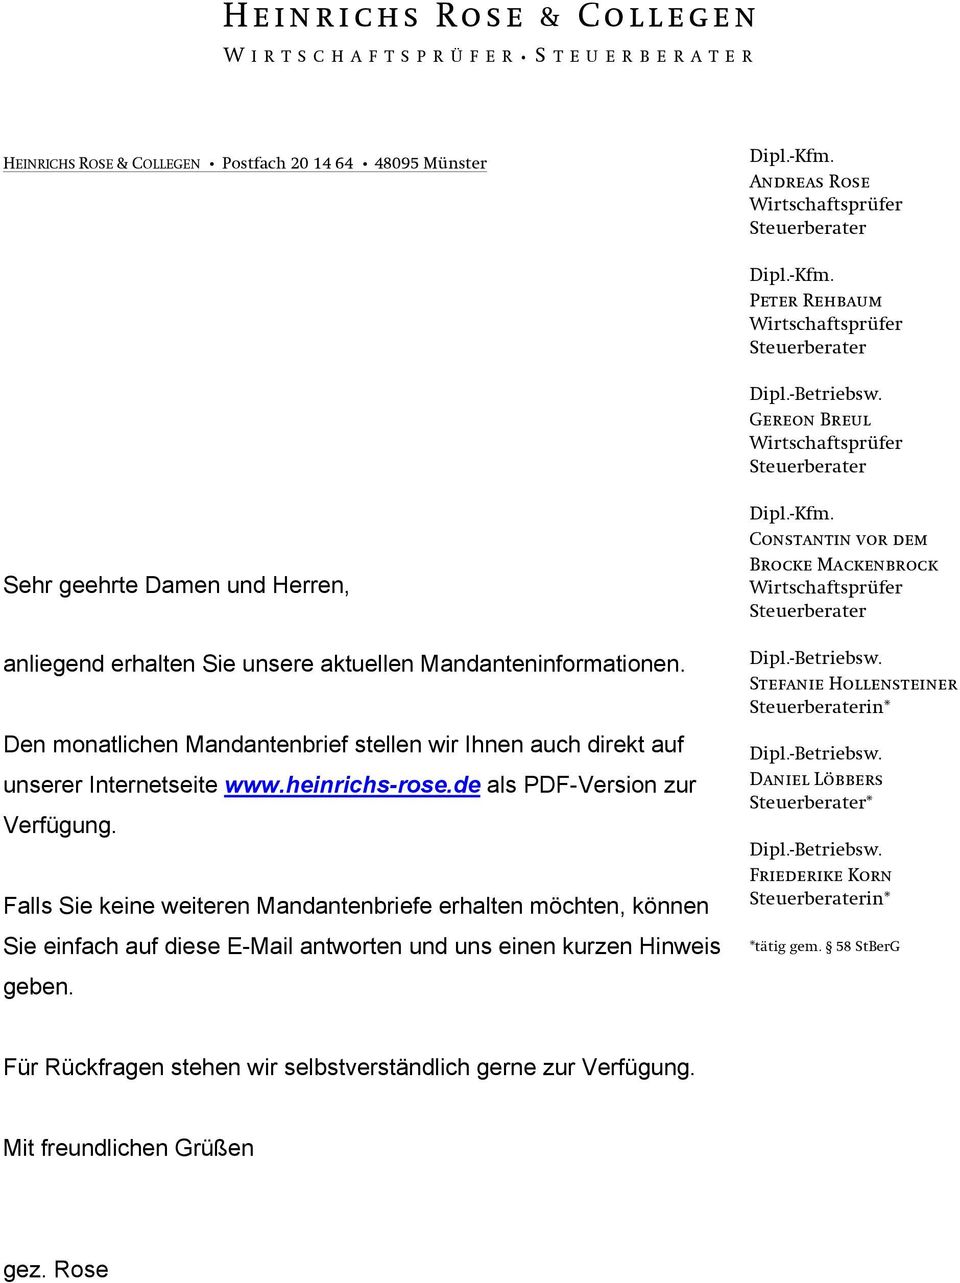 Den monatlichen Mandantenbrief stellen wir Ihnen auch direkt auf unserer Internetseite www.heinrichs-rose.de als PDF-Version zur Verfügung.